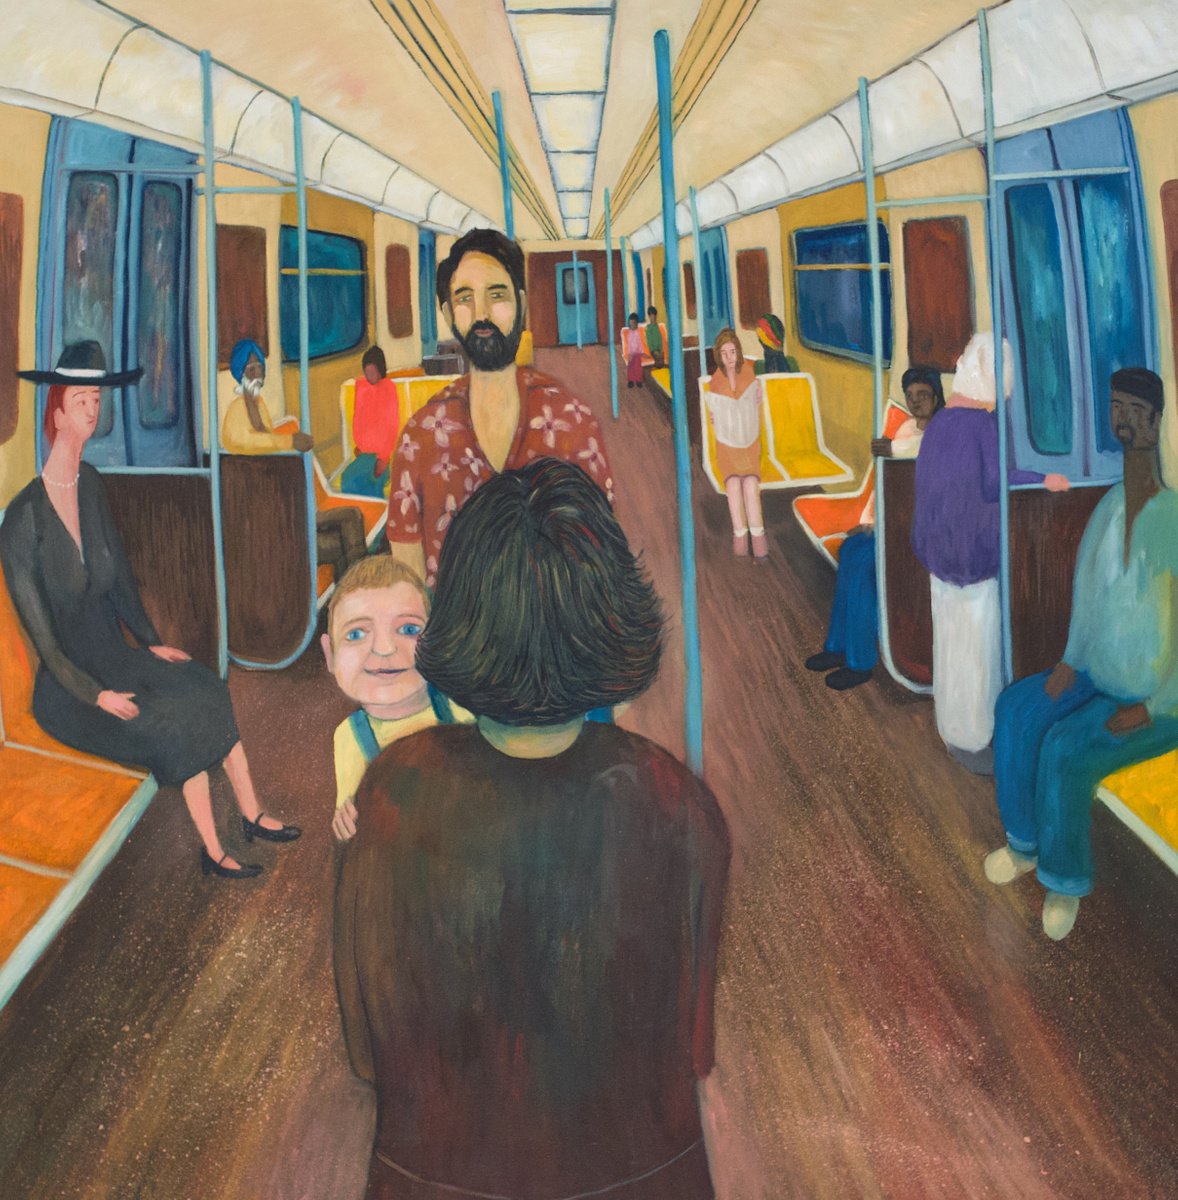 V Train by Seth Feriano